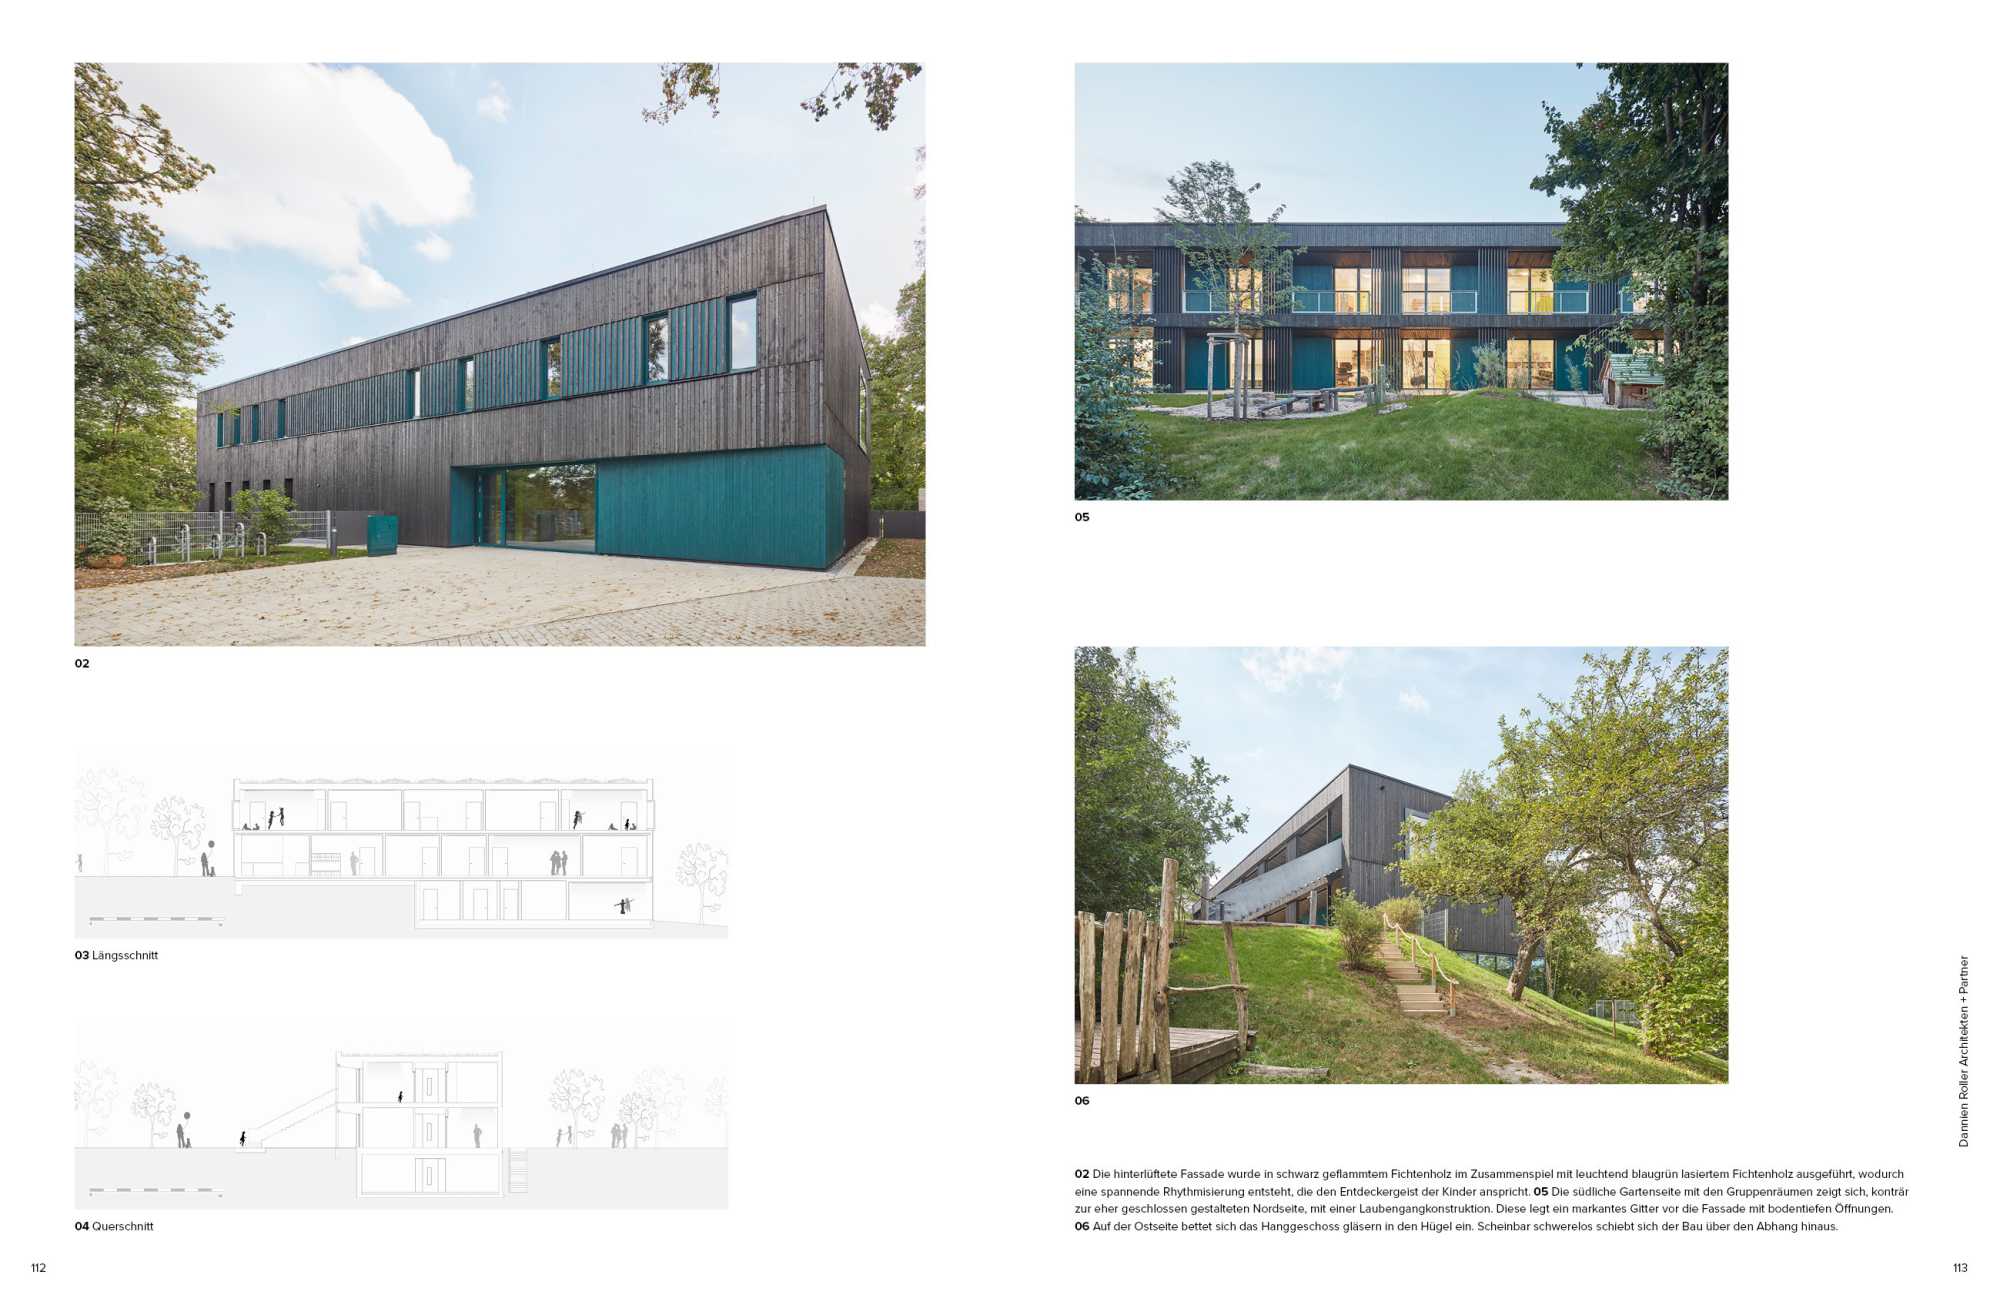 Deutscher Architekturverlag publiziert den Neubau der Kindertagesstätte Sofie Haug in der Ausgabe 2023/24 ({project_images:field_row_count})